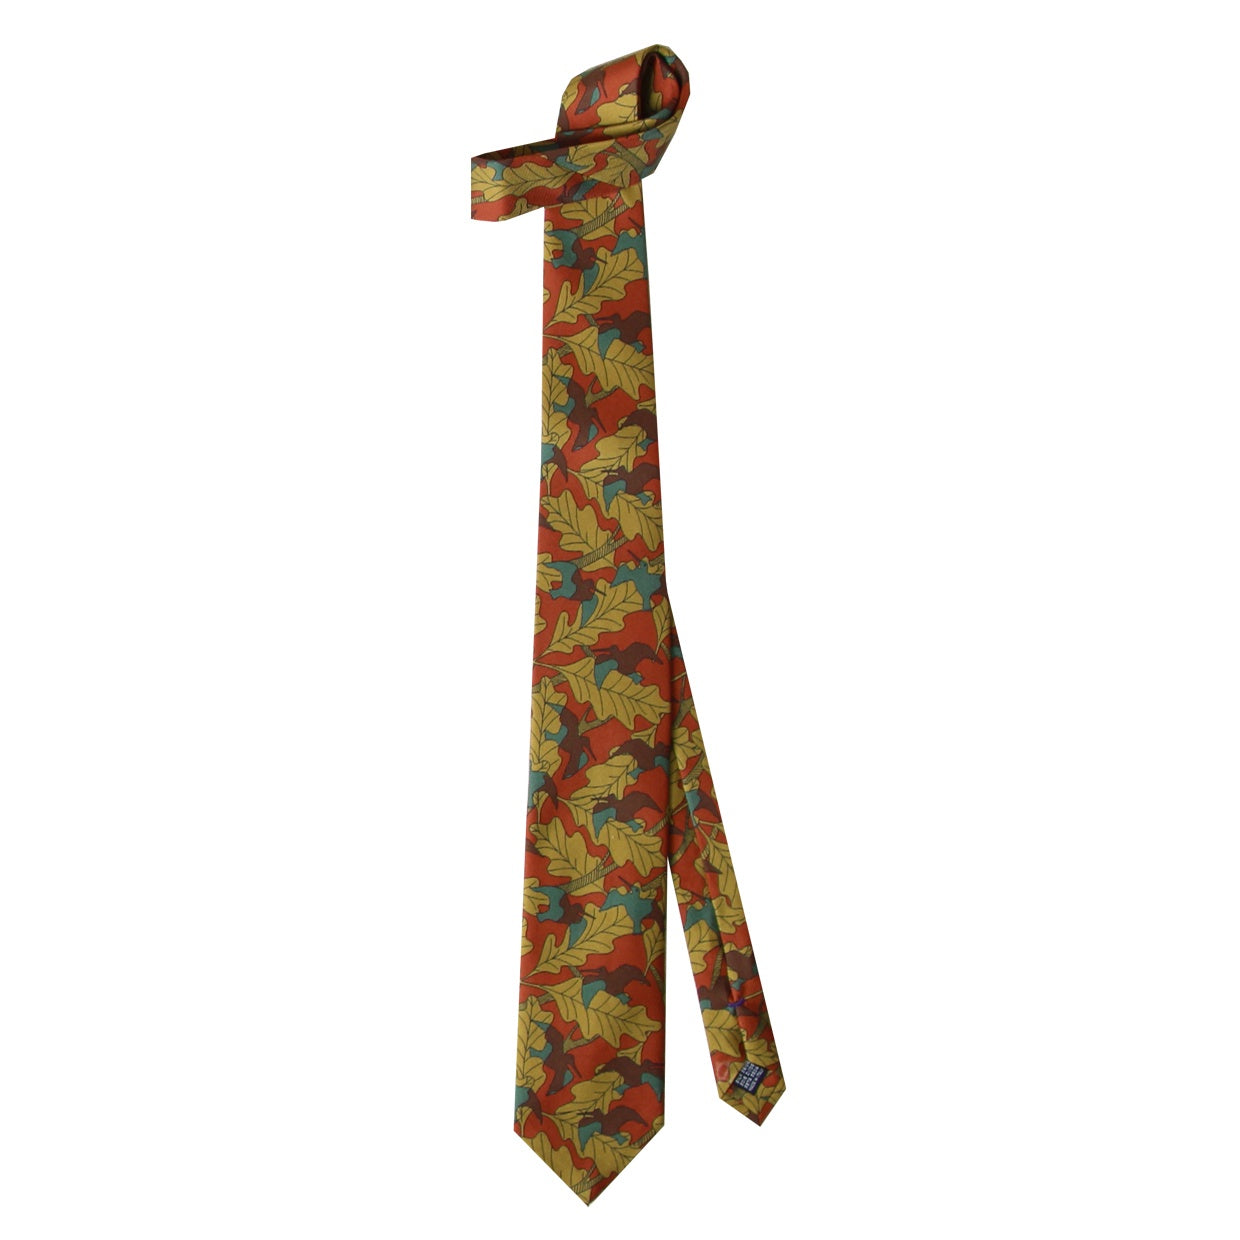 Cravate Parure madder imprimé Bécasses et sous-bois - Rouille bécasses et feuillages savora mousse noisette